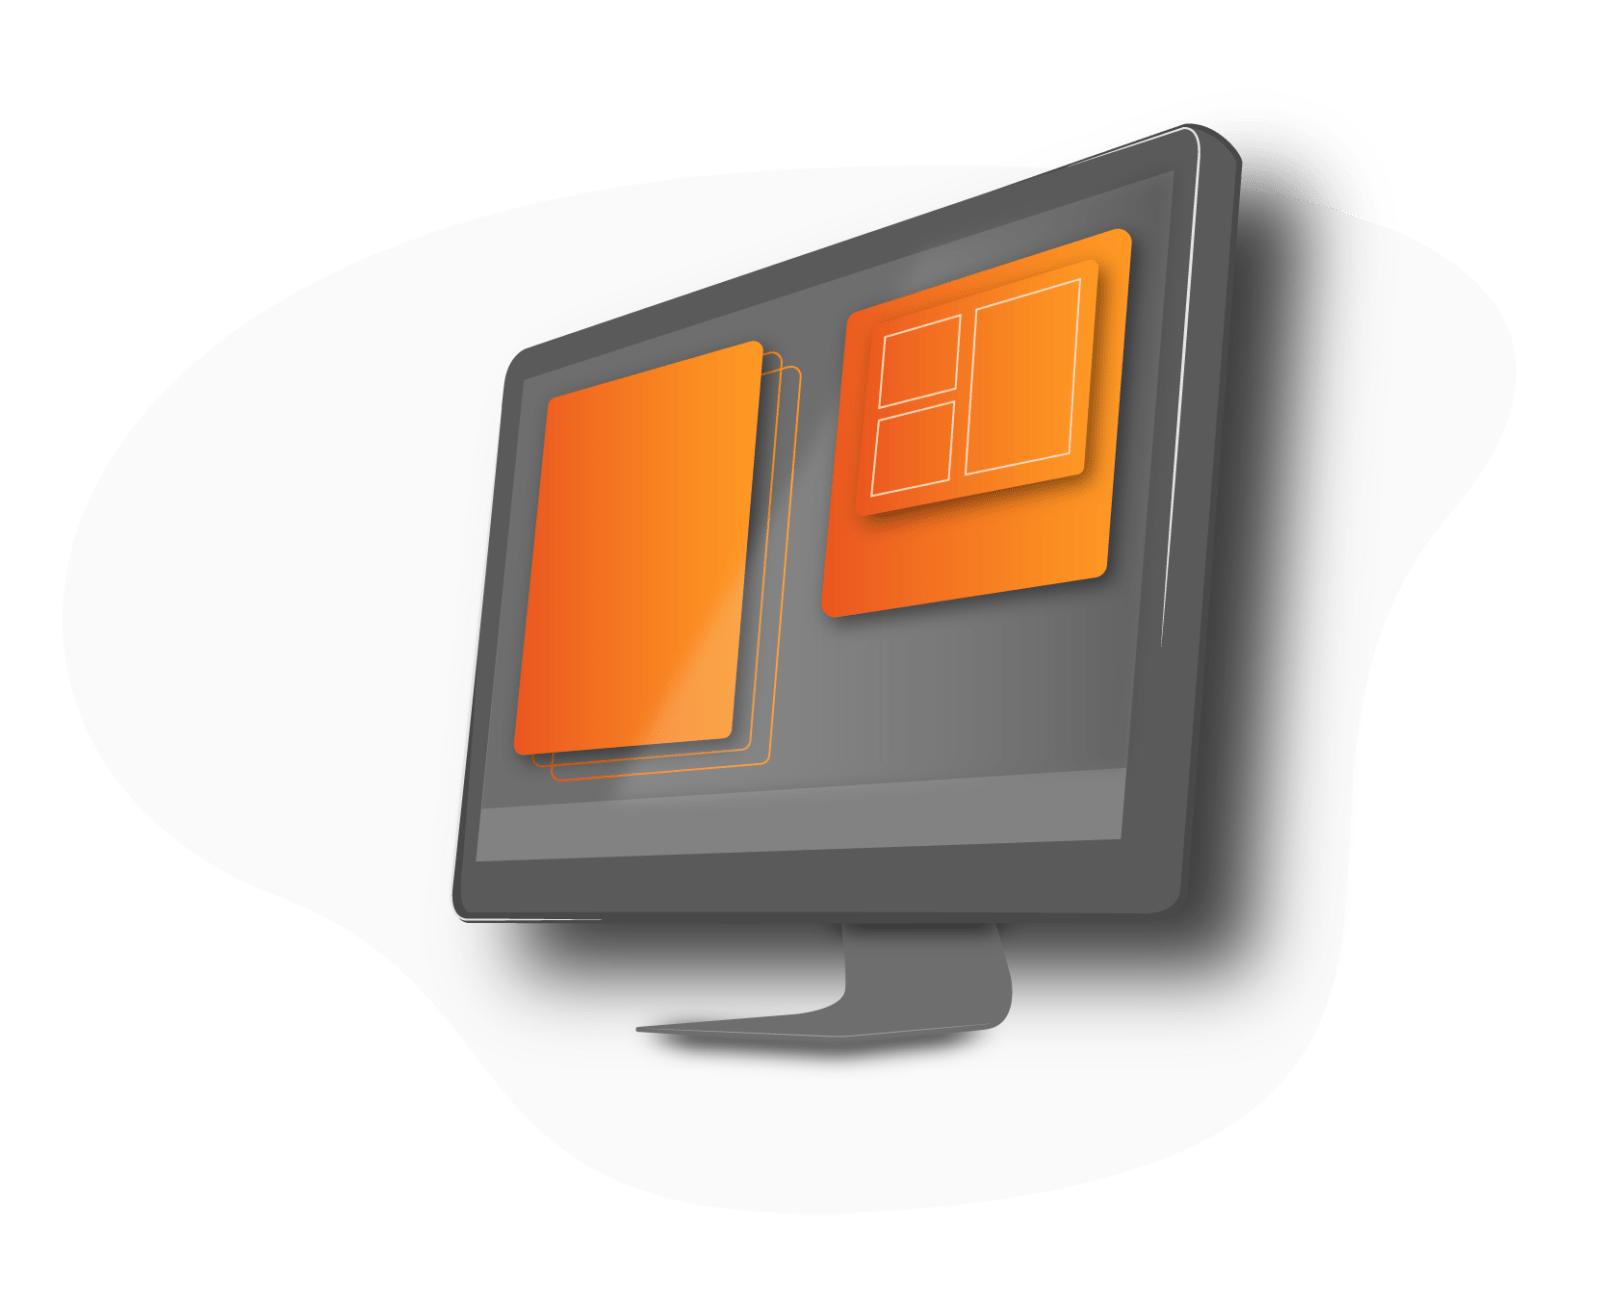 Grafisk illustration af en stationær computerskærm med orange bokse på skærmen